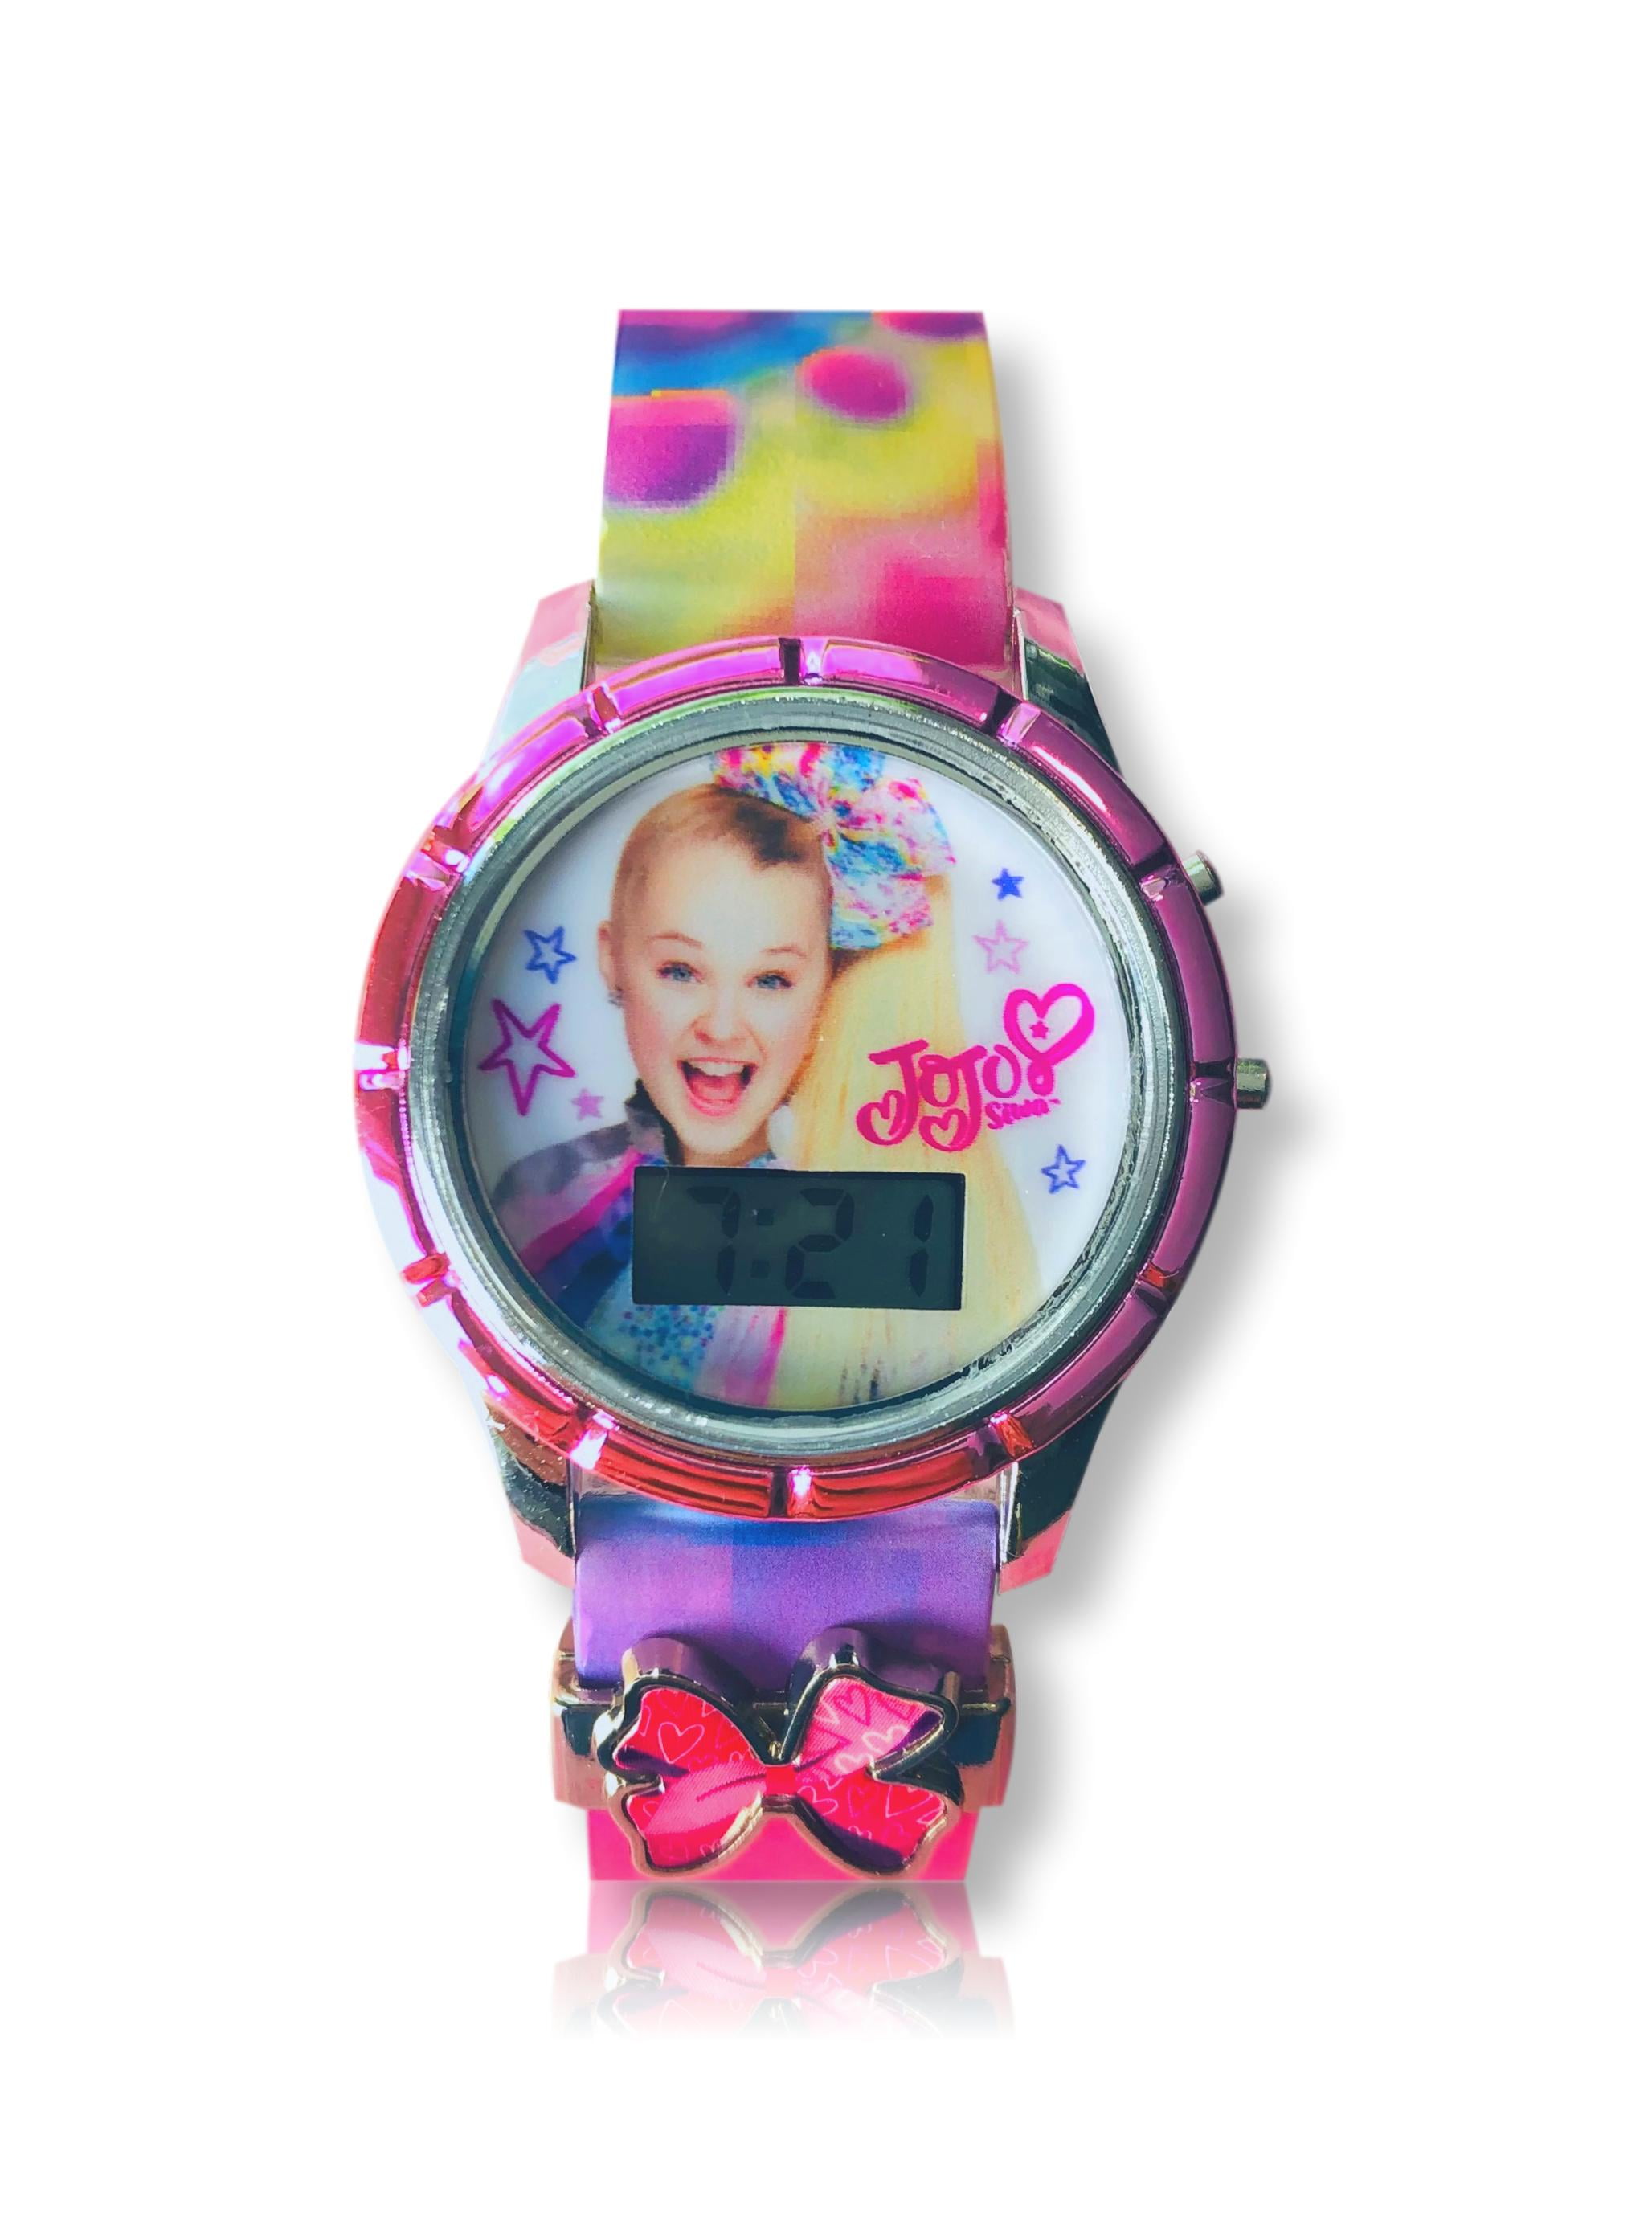 Nickelodeon Jojo Siwa Unisex Child LCD Watch with a Slide Charm - JOJ4380WM